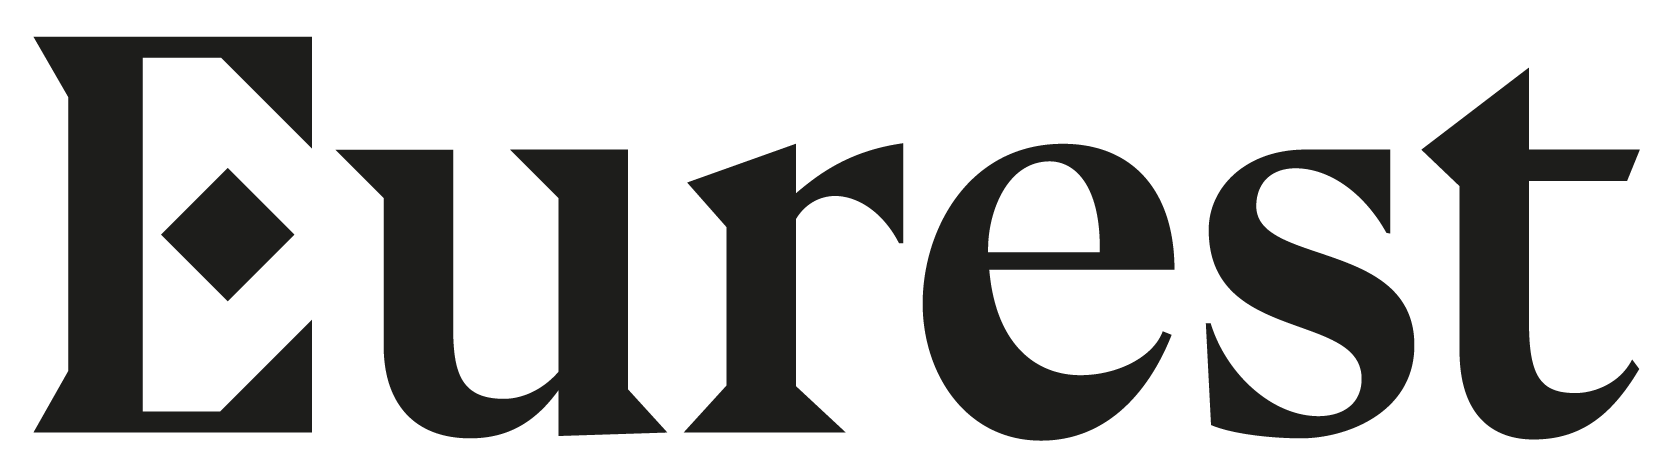 logo for Eurest